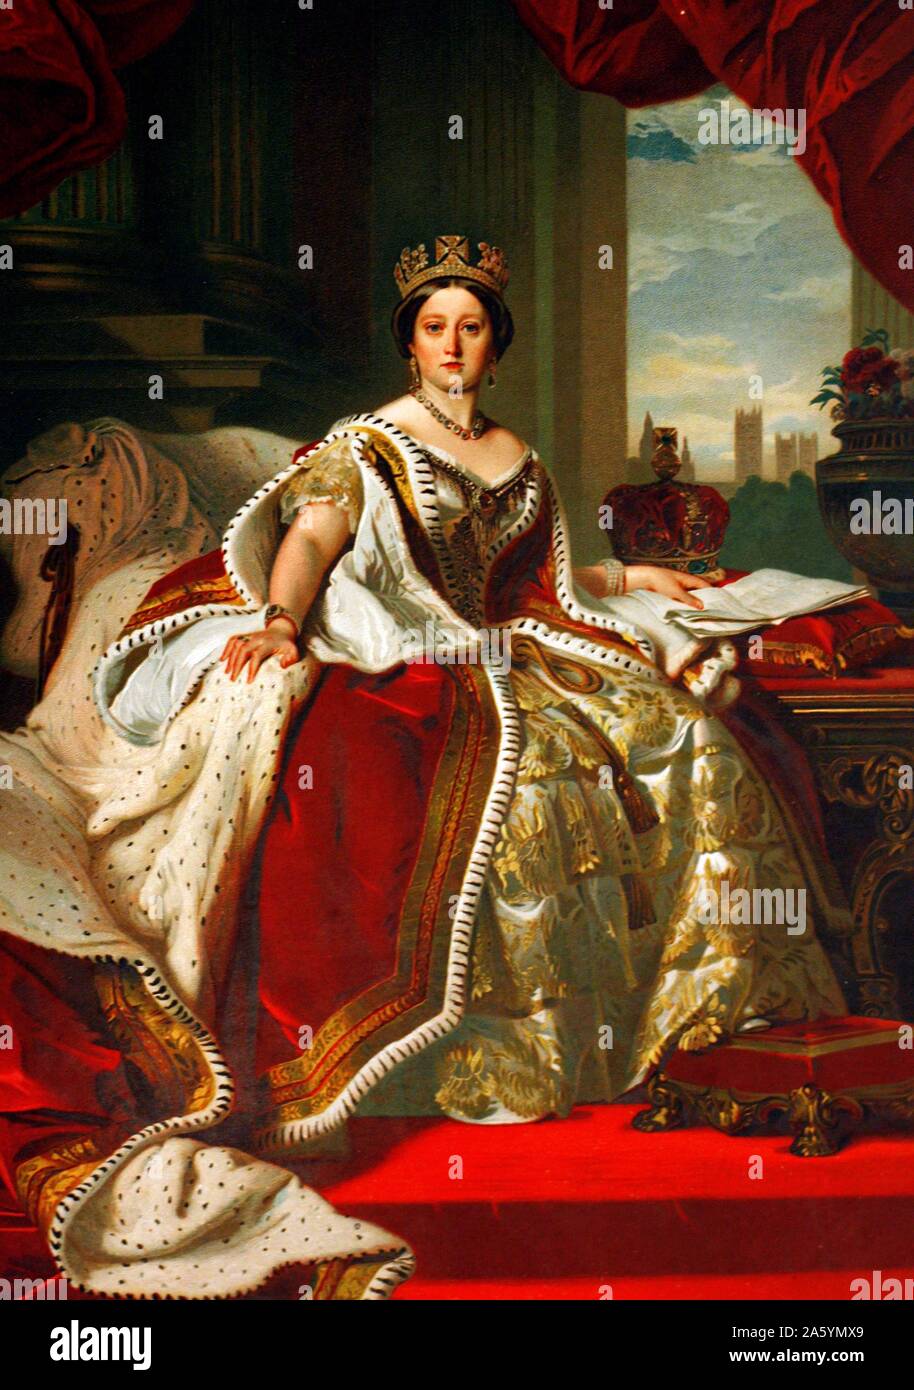 Óleo sobre lienzo retrato de una joven Reina Victoria. Vivió entre Mayo 1819 - enero 1901. Monarca del Reino Unido desde el 20 de junio de 1837 hasta su muerte. Esta pintura muestra su lujosa en capas de material batas y decir delante de una ventana. Foto de stock